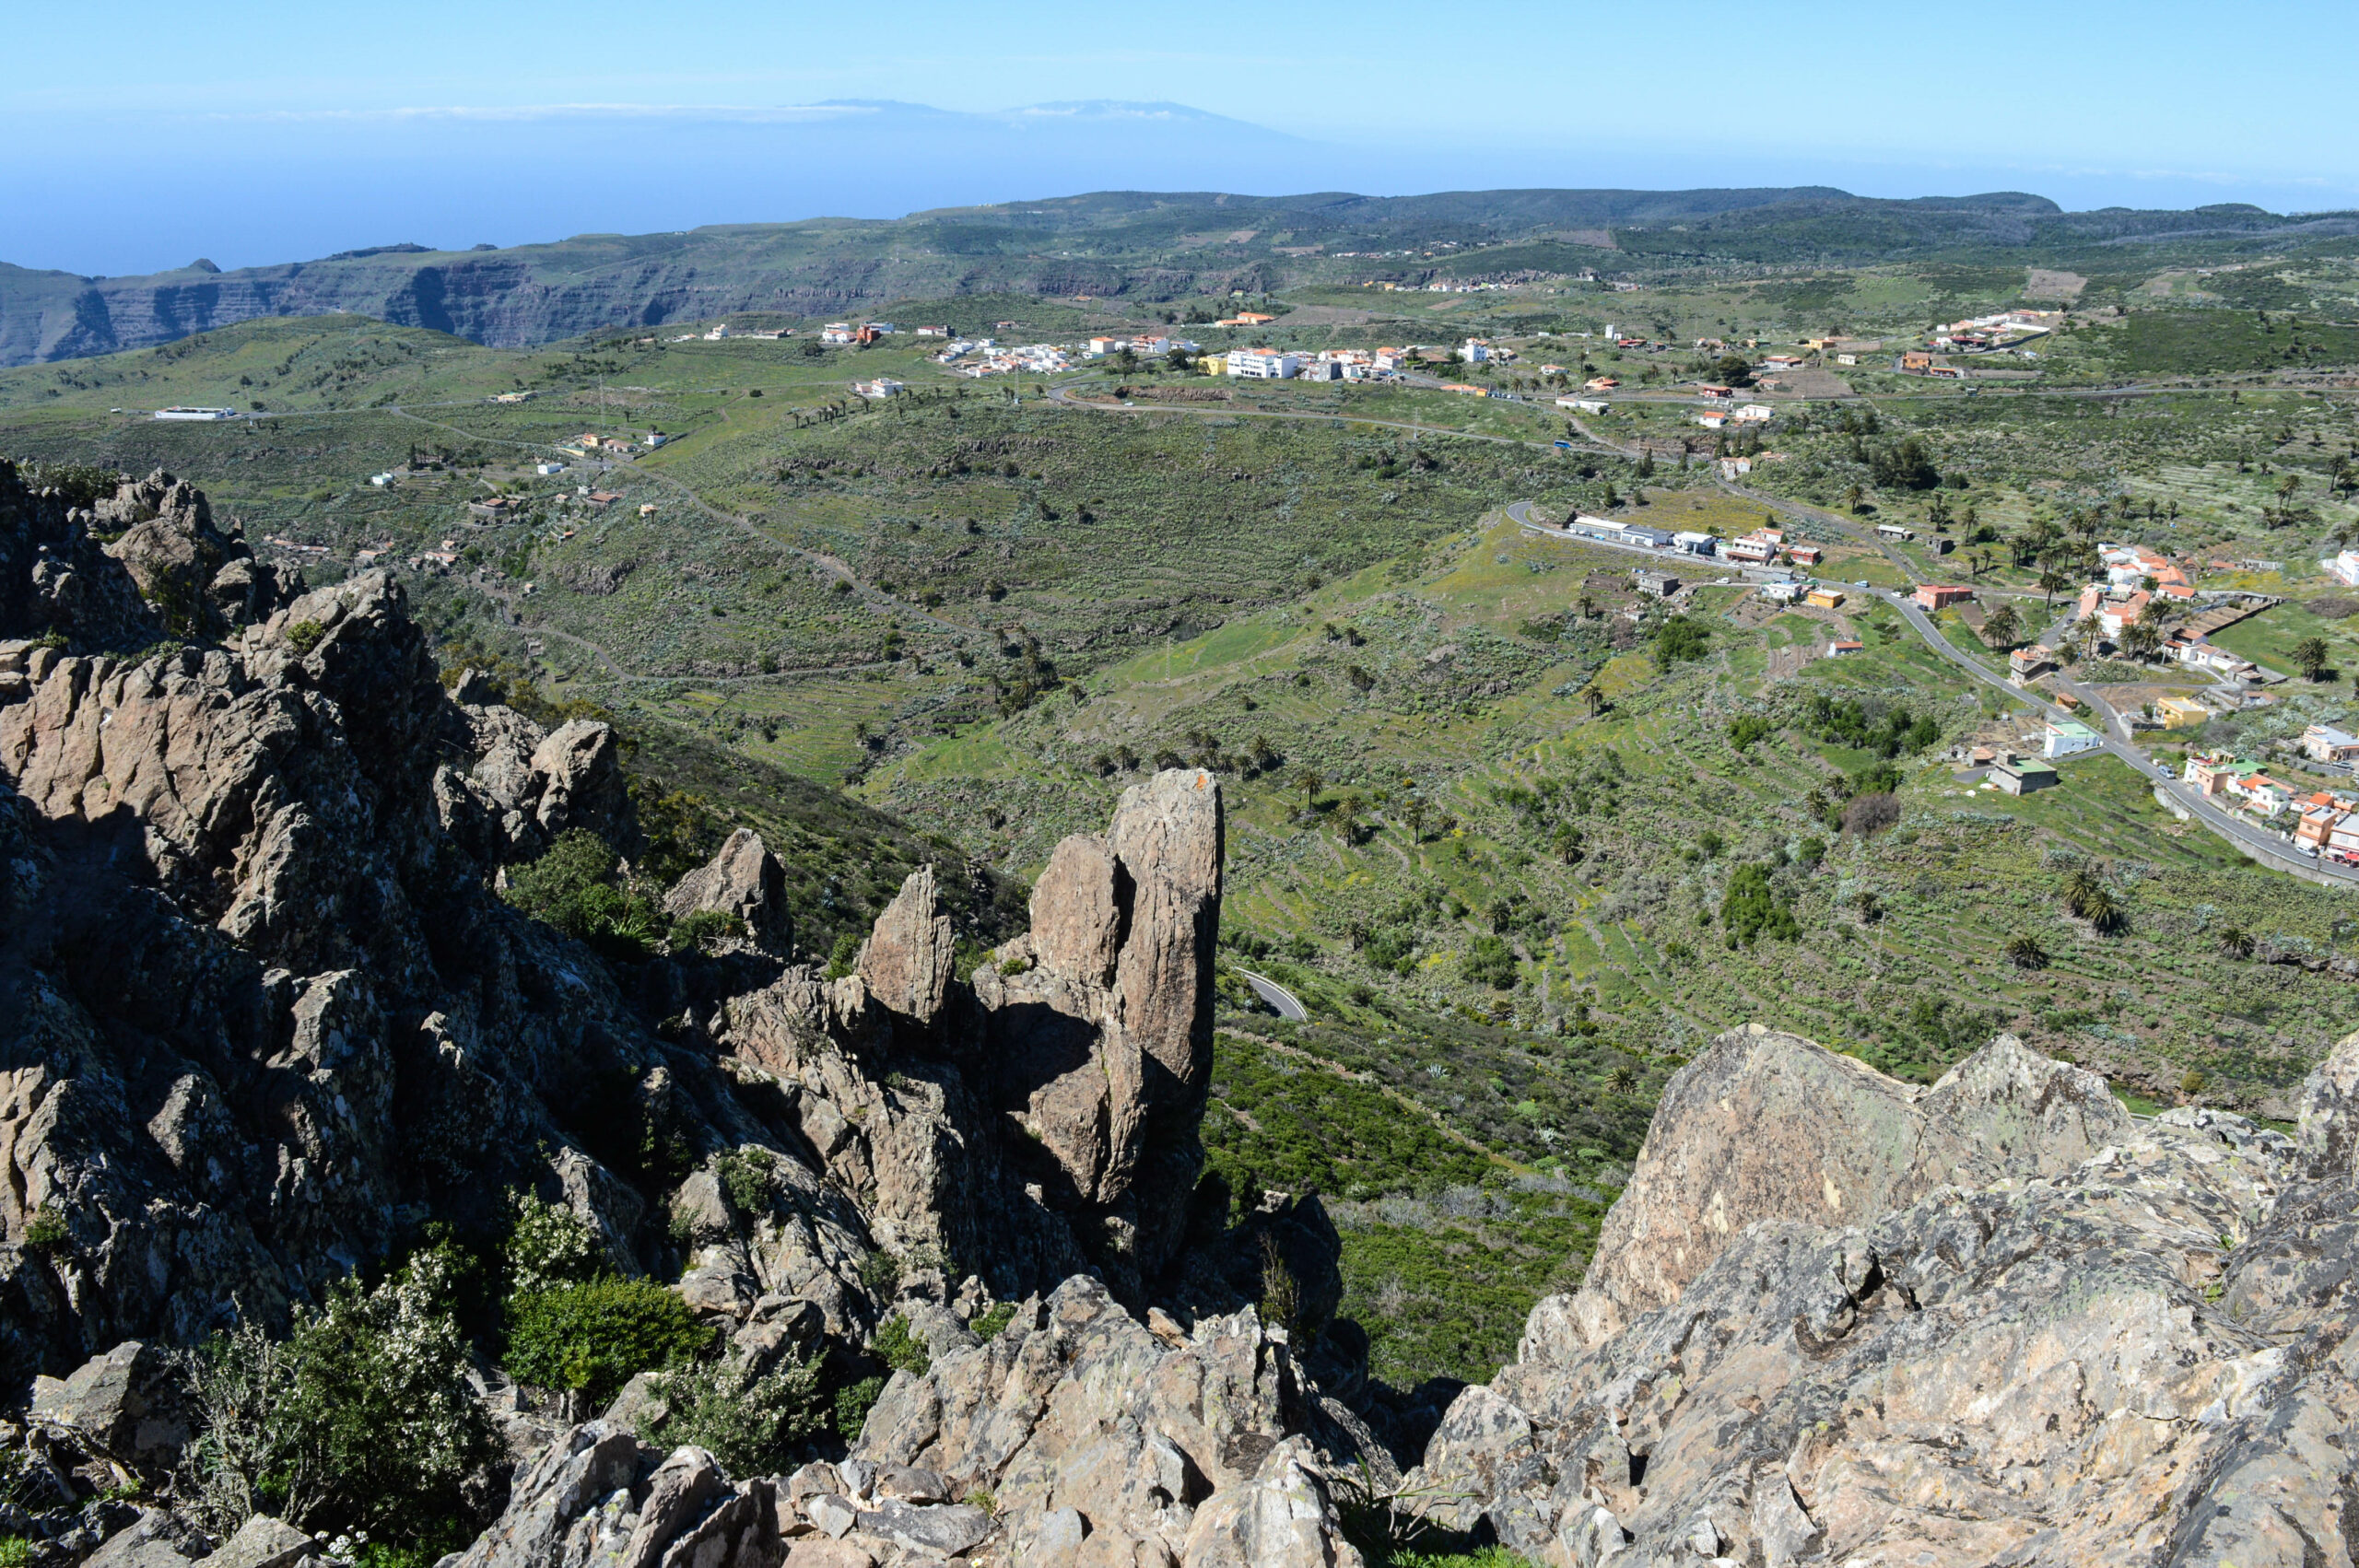 Vue depuis le haut de la fortaleza : rochers au 1er plan, vallée verte et petits villages au loin